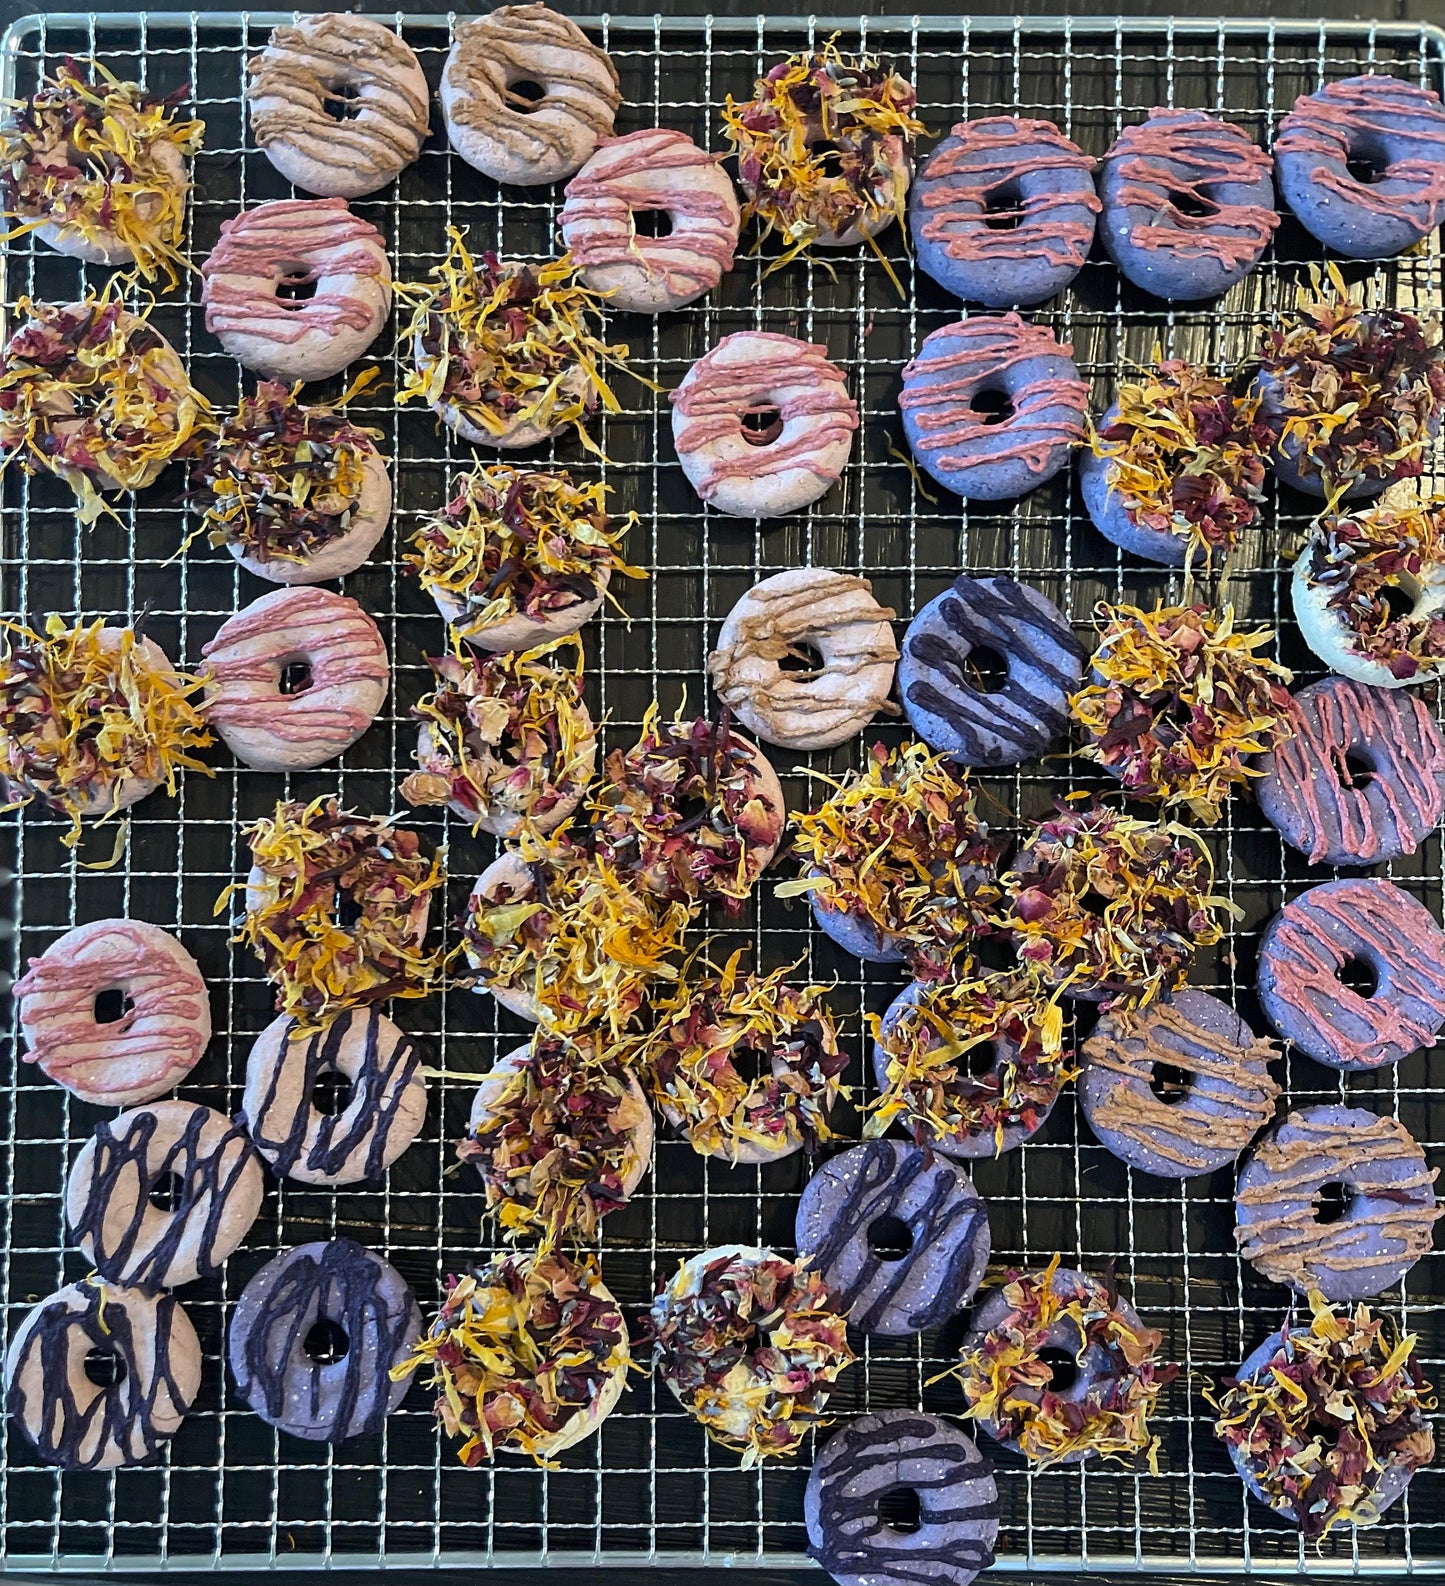 Bunkin’ Donuts